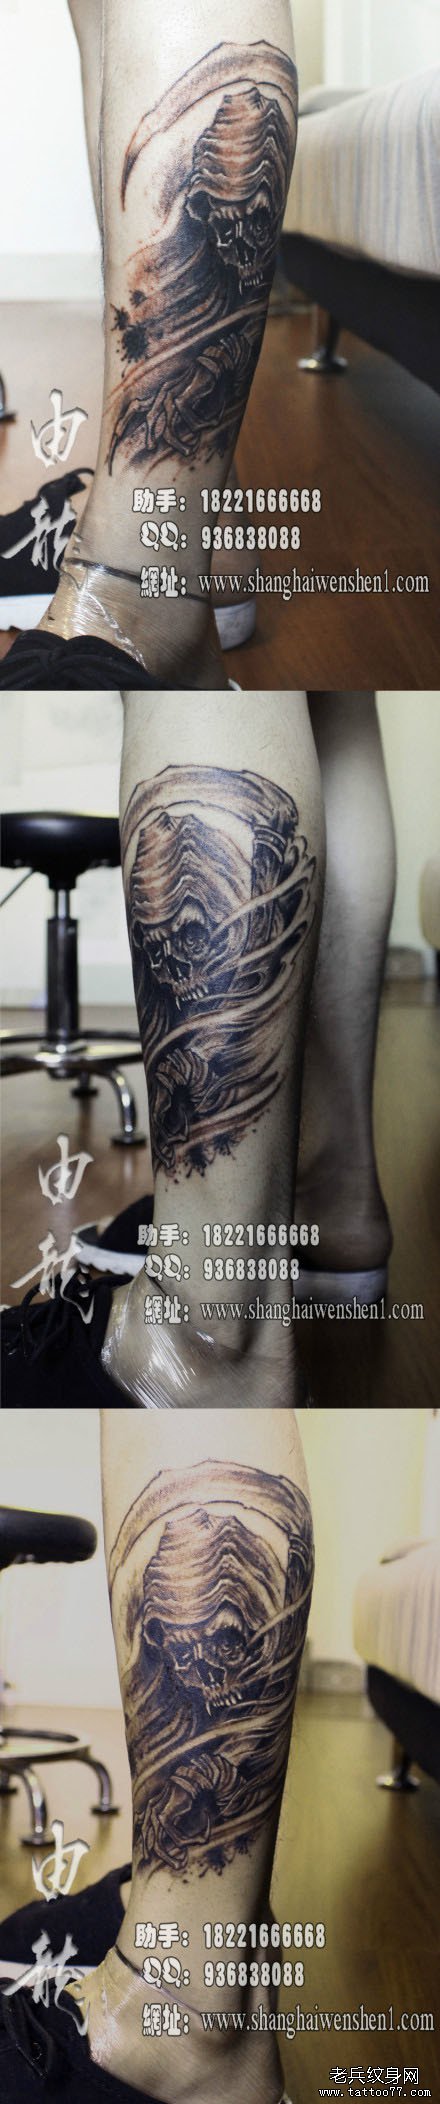 男人腿部超酷帅气的黑灰死神纹身图案